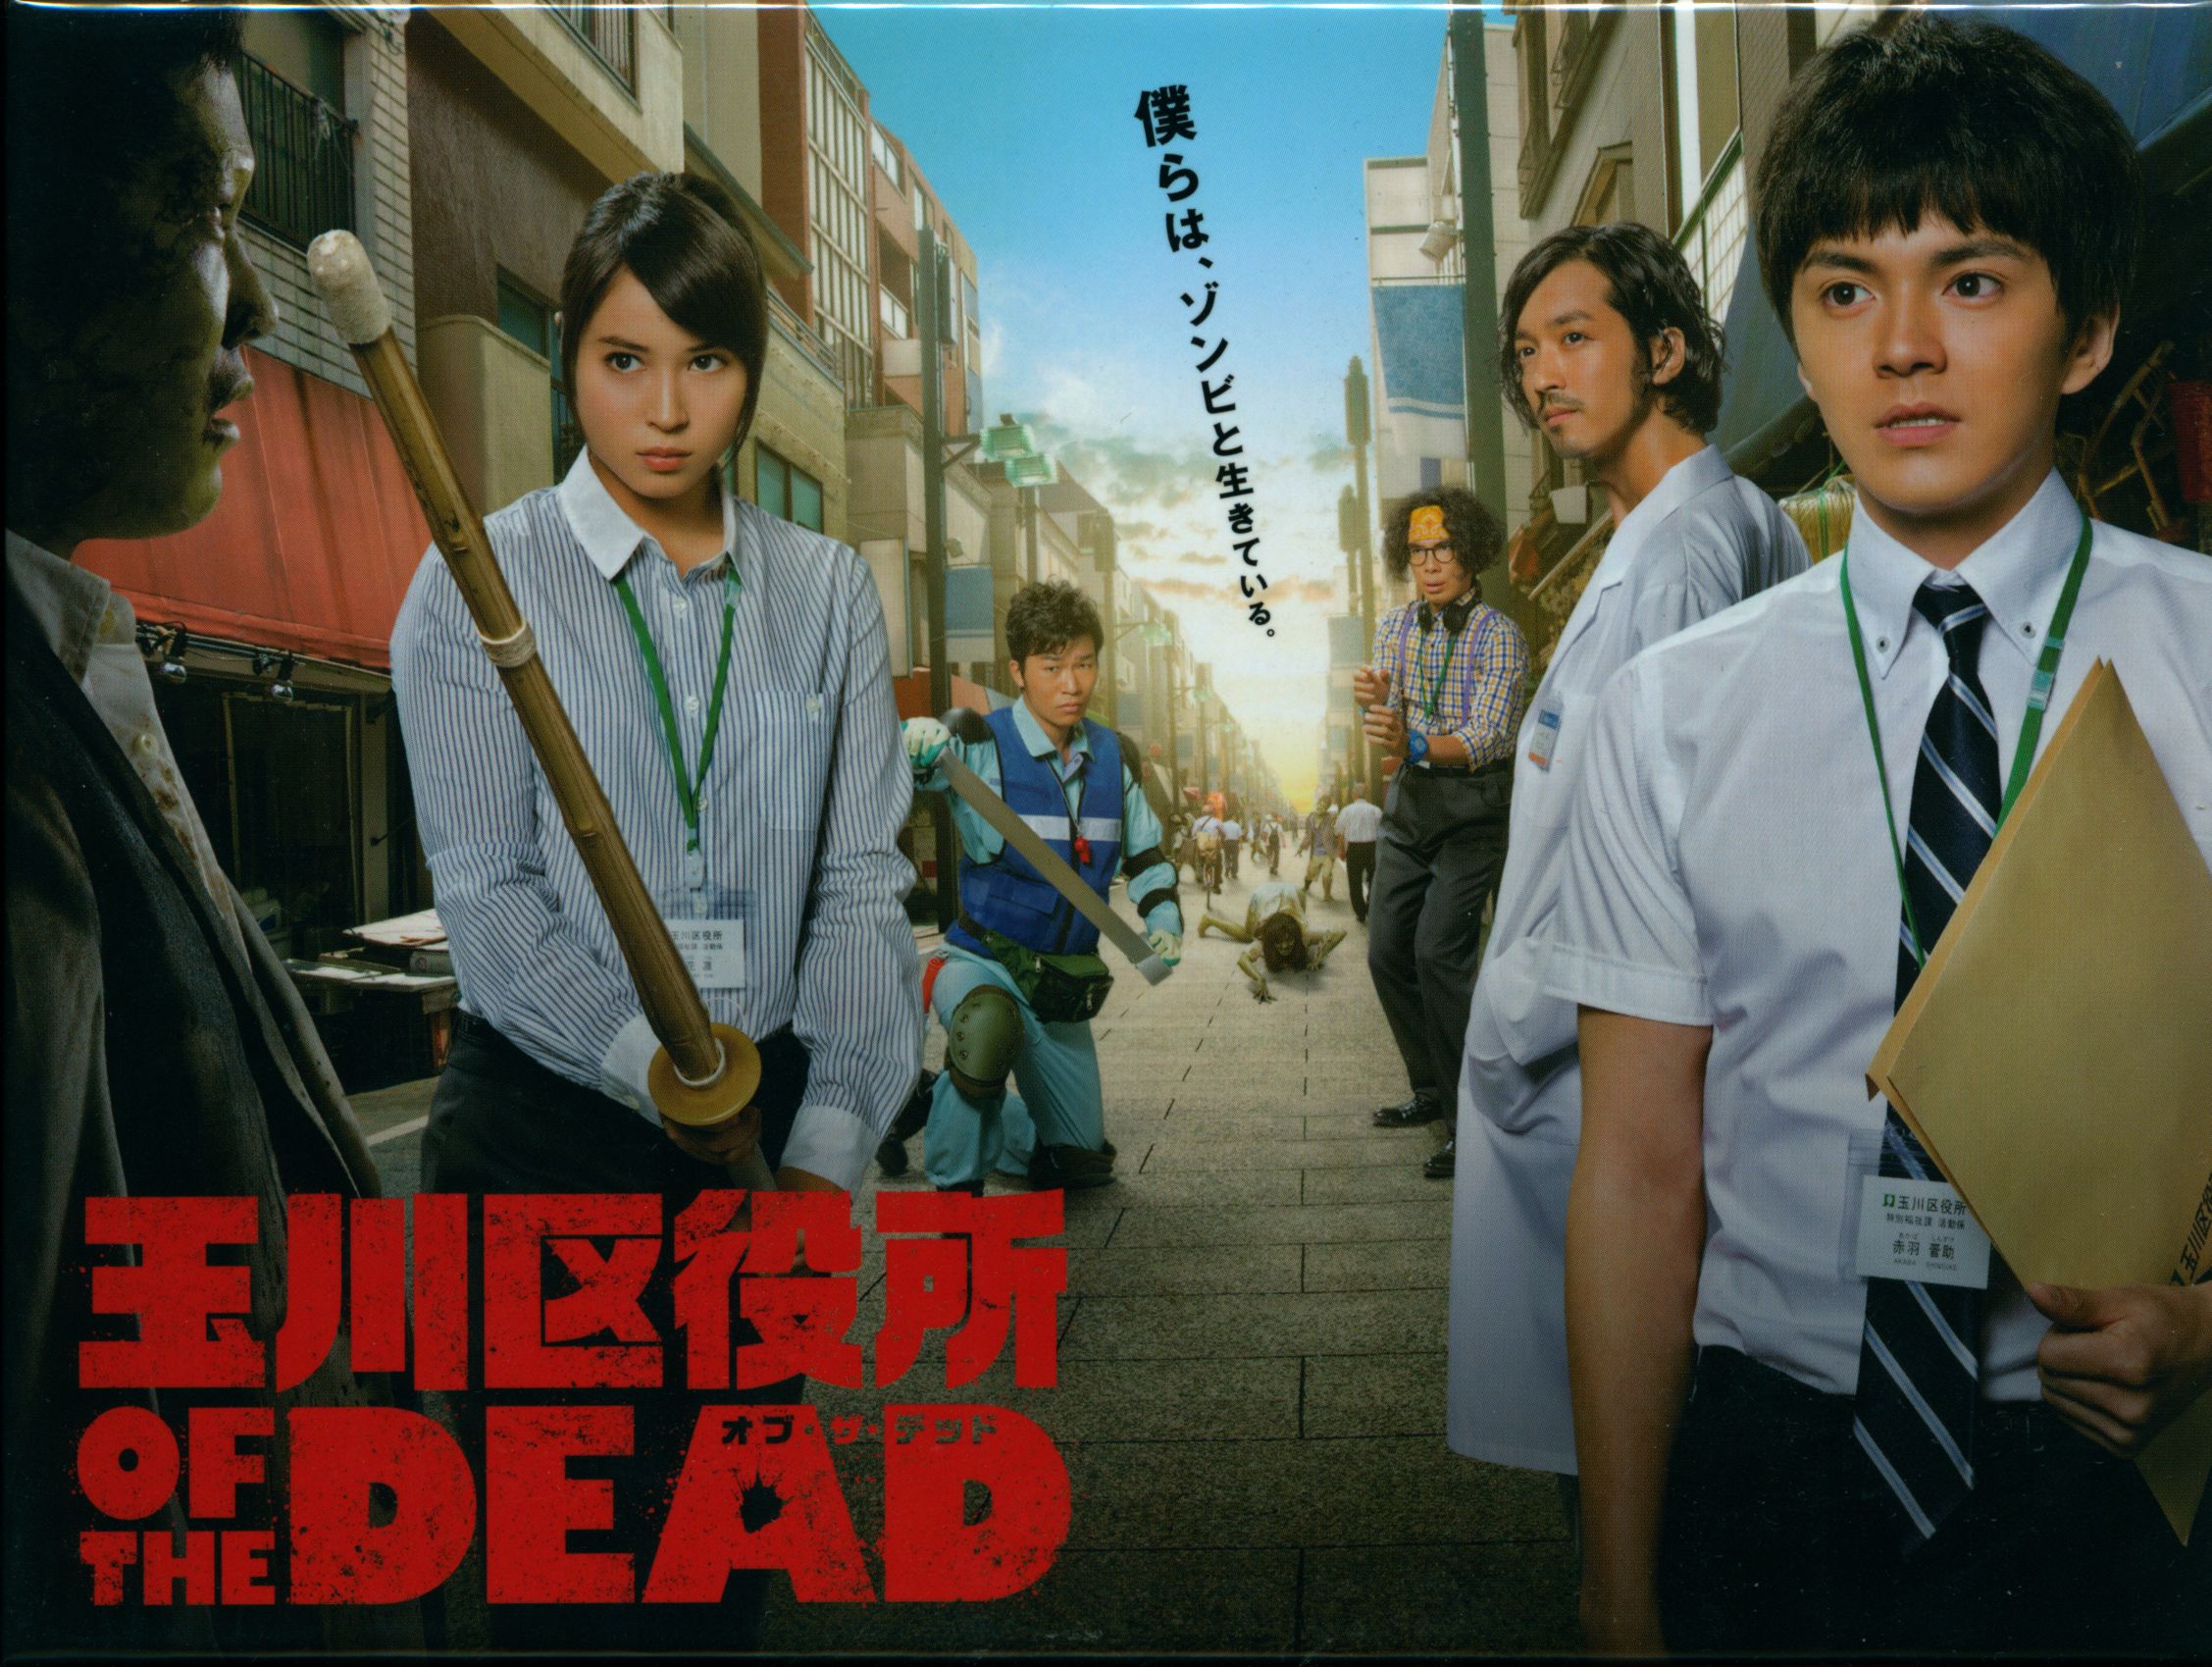 玉川区役所 OF THE DEAD DVD BOX - TVドラマ